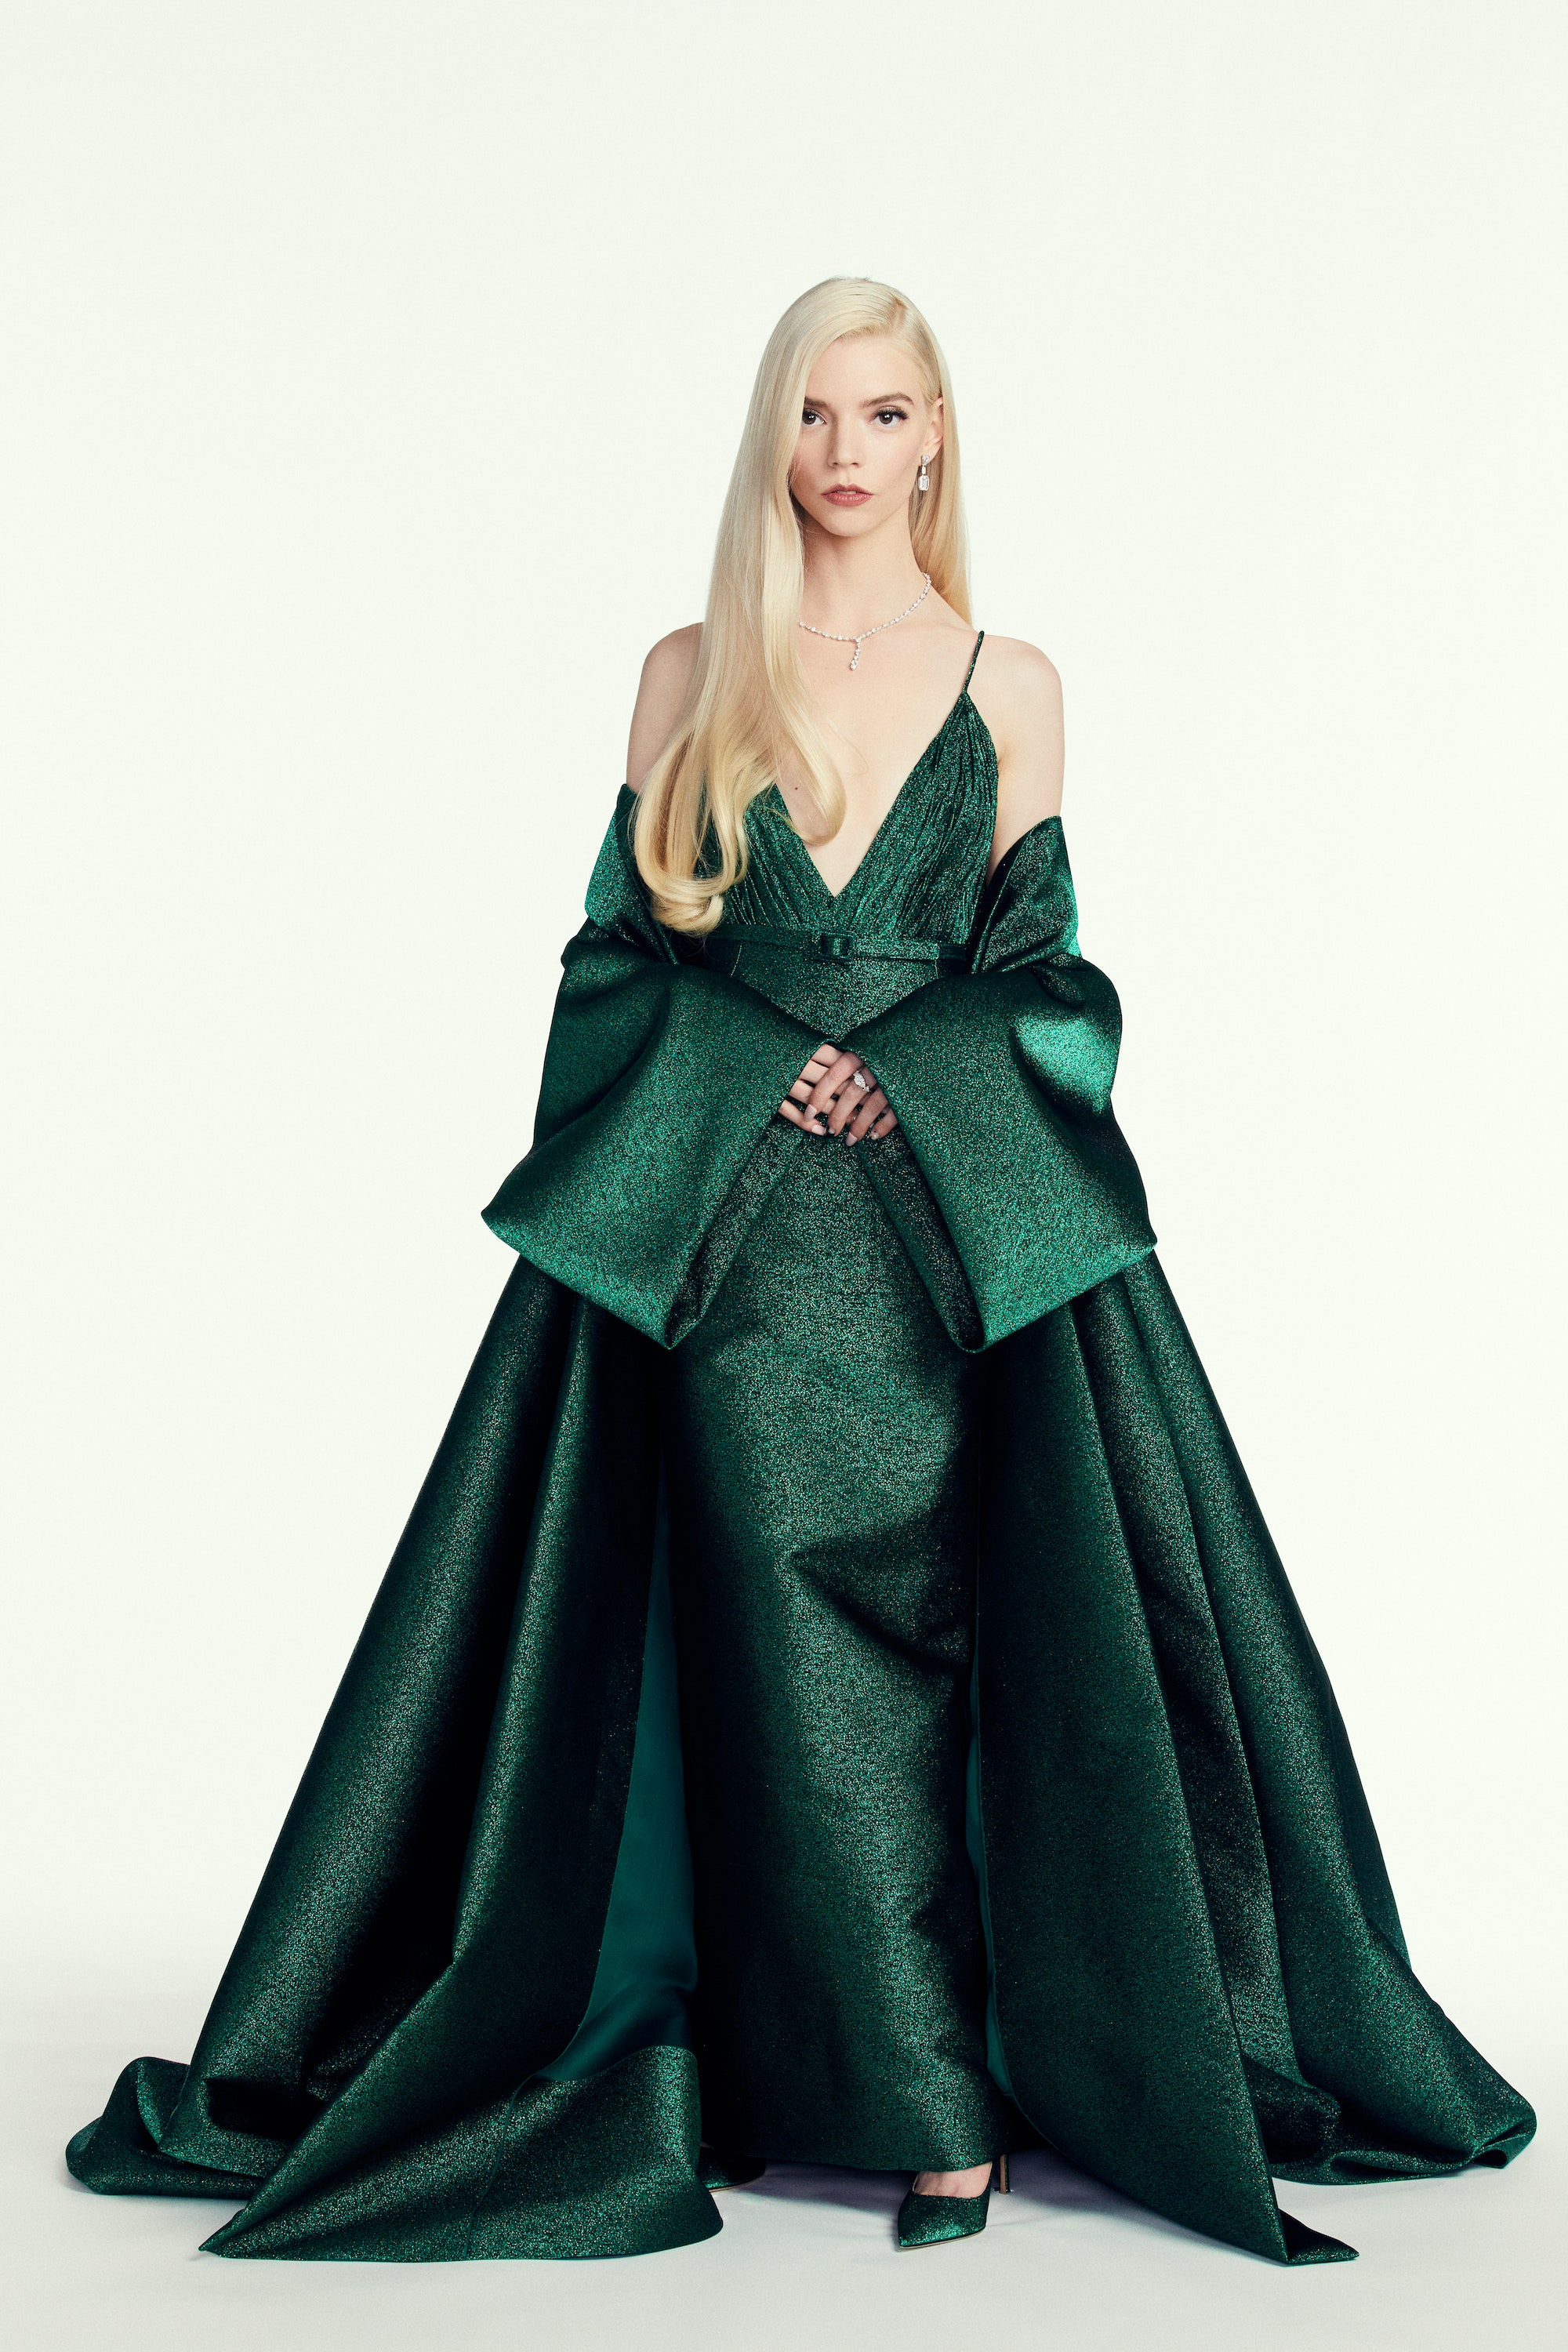 Аня ТейлорДжой как создавалось платье Dior лауреатки премии «Золотой глобус»